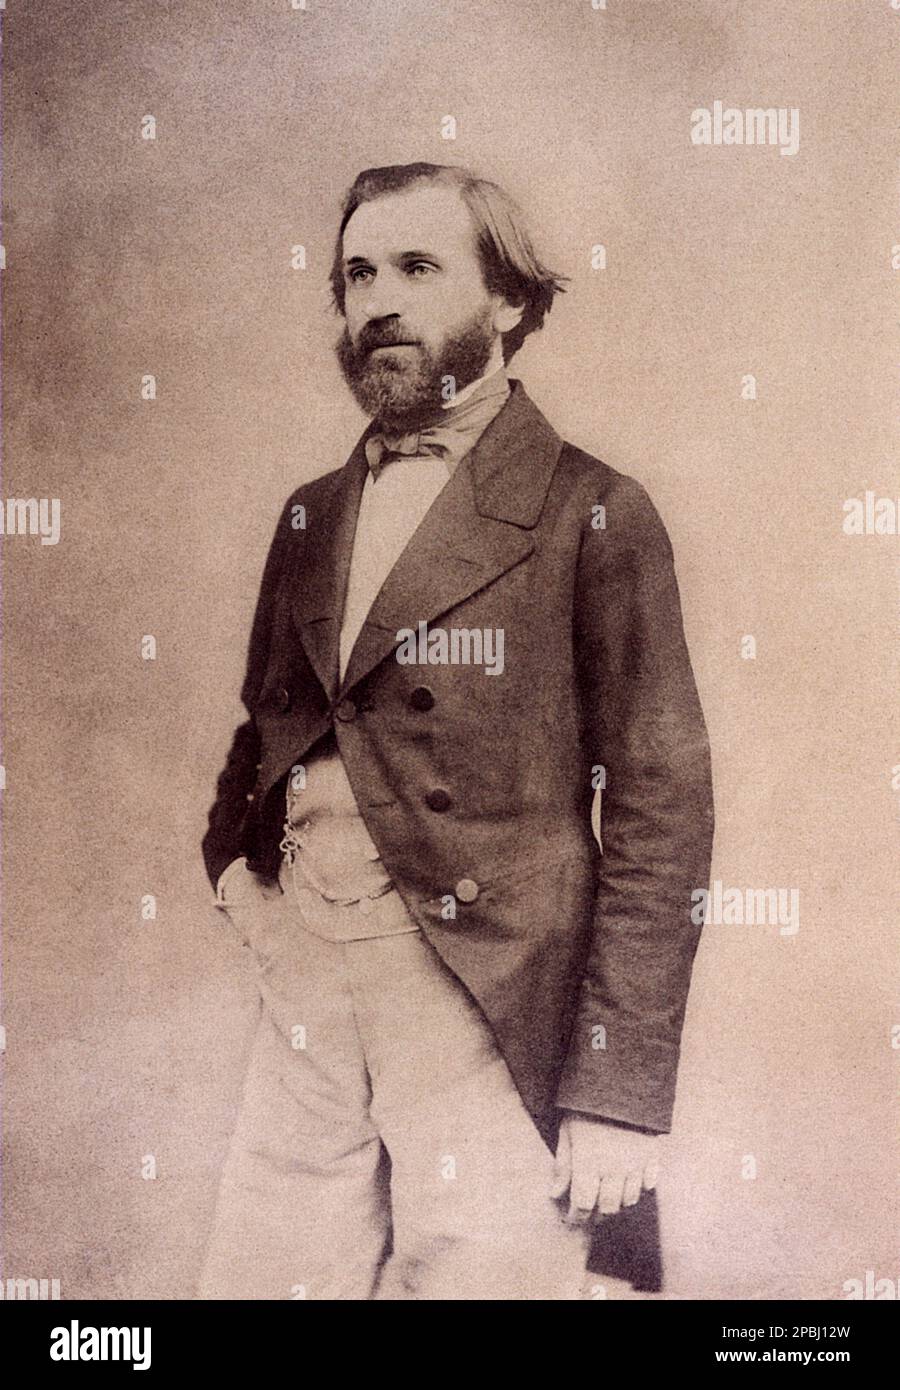 1857 , Paris , France : The celebrated italian music composer GIUSEPPE VERDI ( 1813 - 1901 ). Photo by E. Disderi - COMPOSITORE - OPERA LIRICA - CLASSICA - CLASSICAL - PORTRAIT - RITRATTO - MUSICISTA - MUSICA - BEARD - BARBA - FIOCCO - BOW - CRAVATTA - TIE - papillon ------ ARCHIVIO GBB Stock Photo